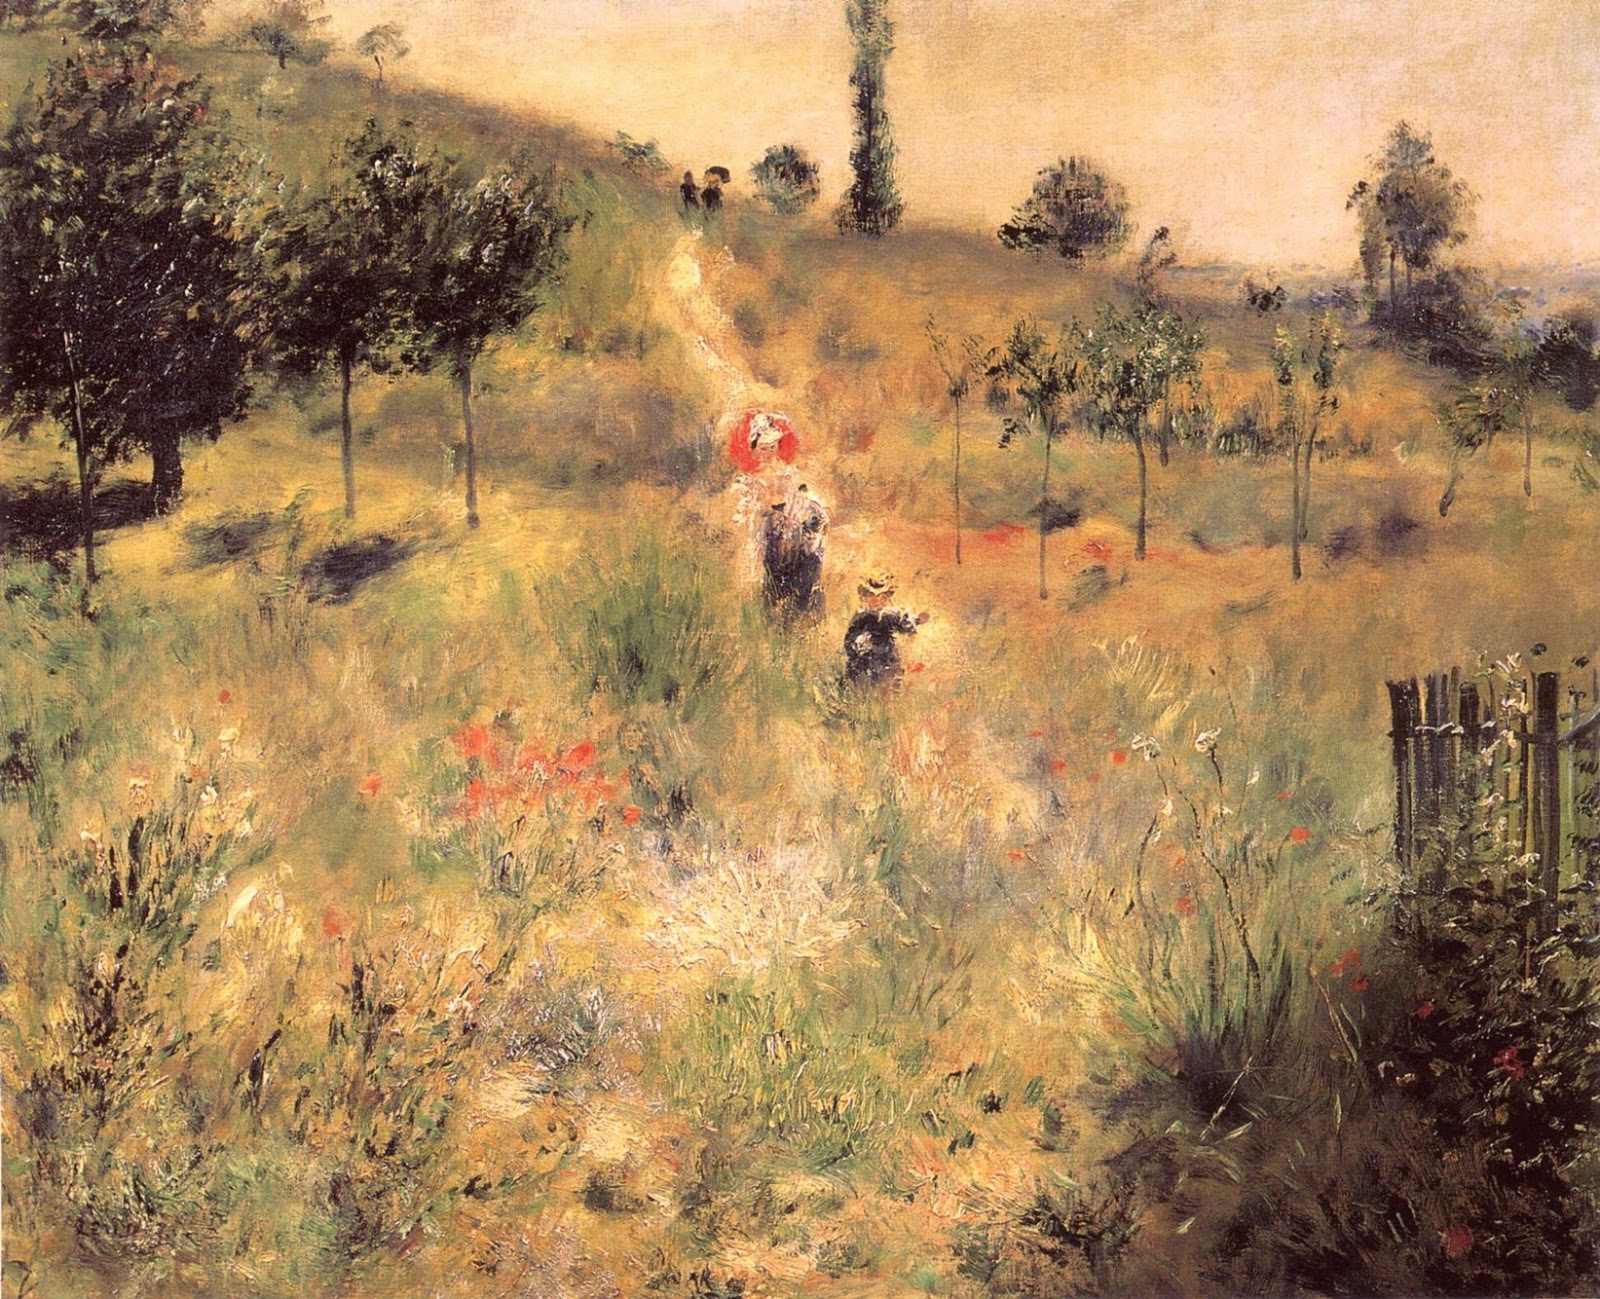 Pierre+Auguste+Renoir-1841-1-19 (938).jpg